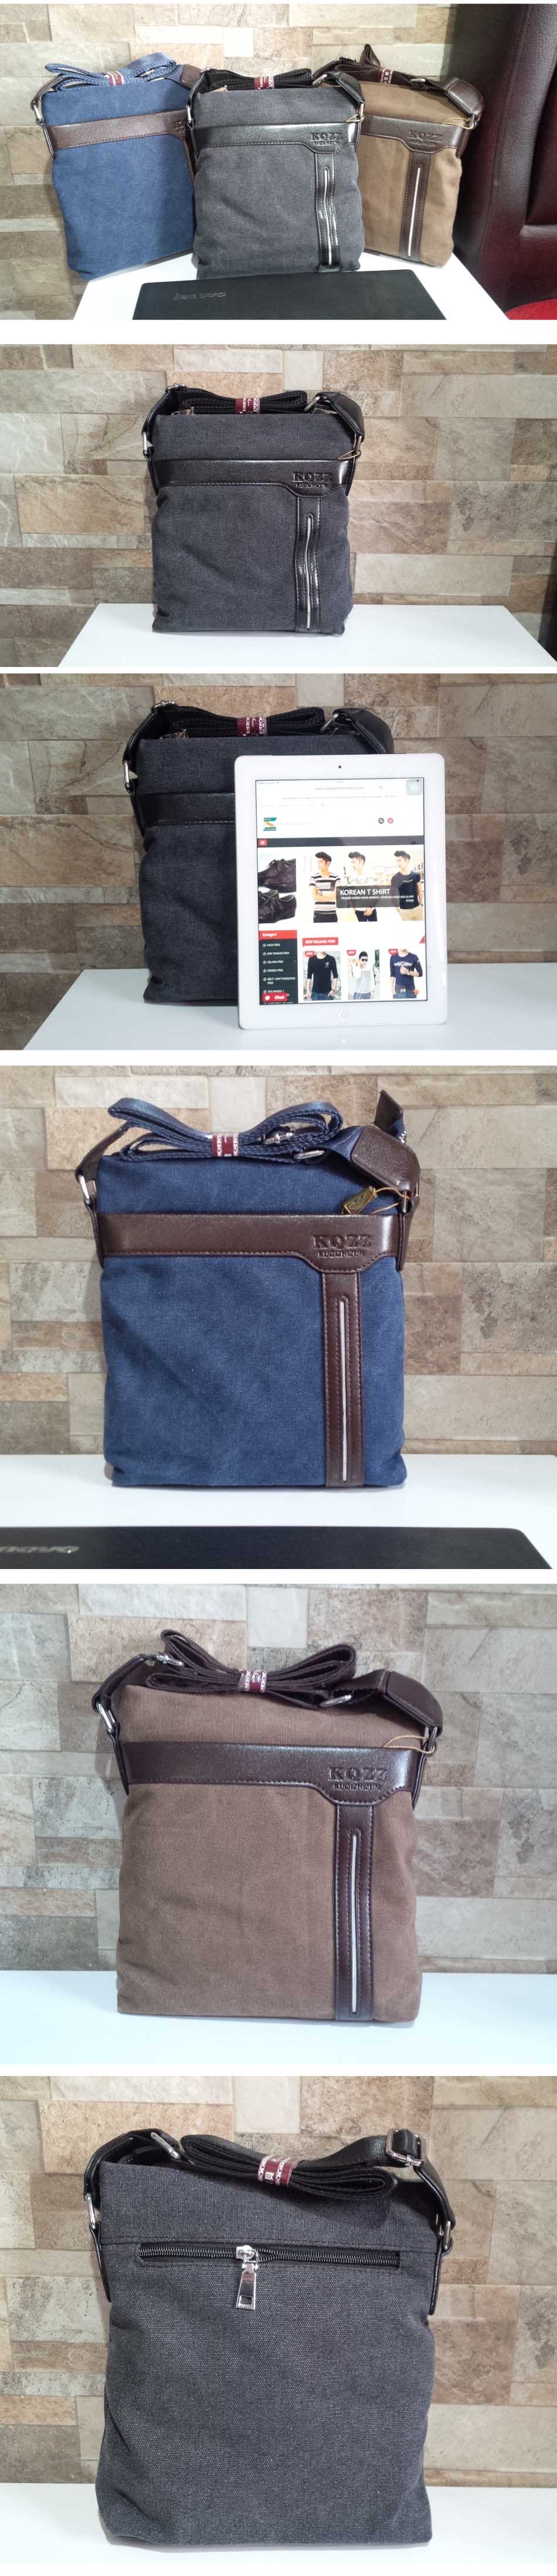 jual tas selempang pria yang berguna untuk menyimpan gadget dan tablet 7" , temukan koleksi tas selempang pria terlengkap dengan model terbaru hanya di store.pakaianfashionpria.com